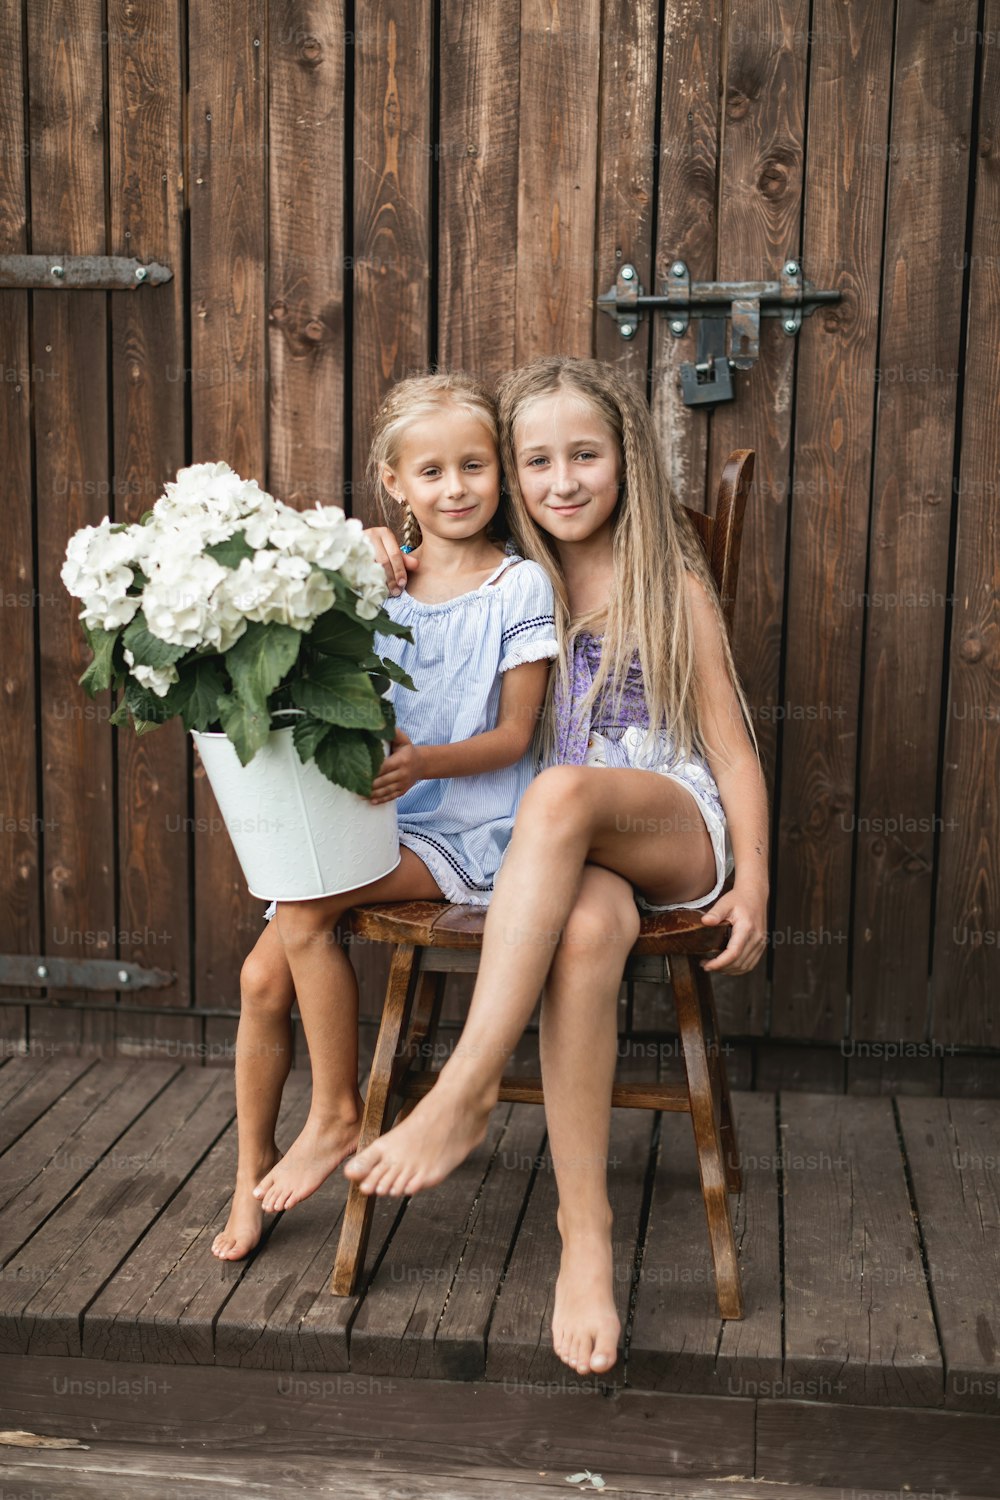 Zwei glückliche blonde Mädchen, Schwestern oder Freundinnen, die zusammen auf dem Holzstuhl in der Nähe der alten Holzscheune im Freien sitzen und Blumenstrauß, weiße Hortensien im Eimer halten.